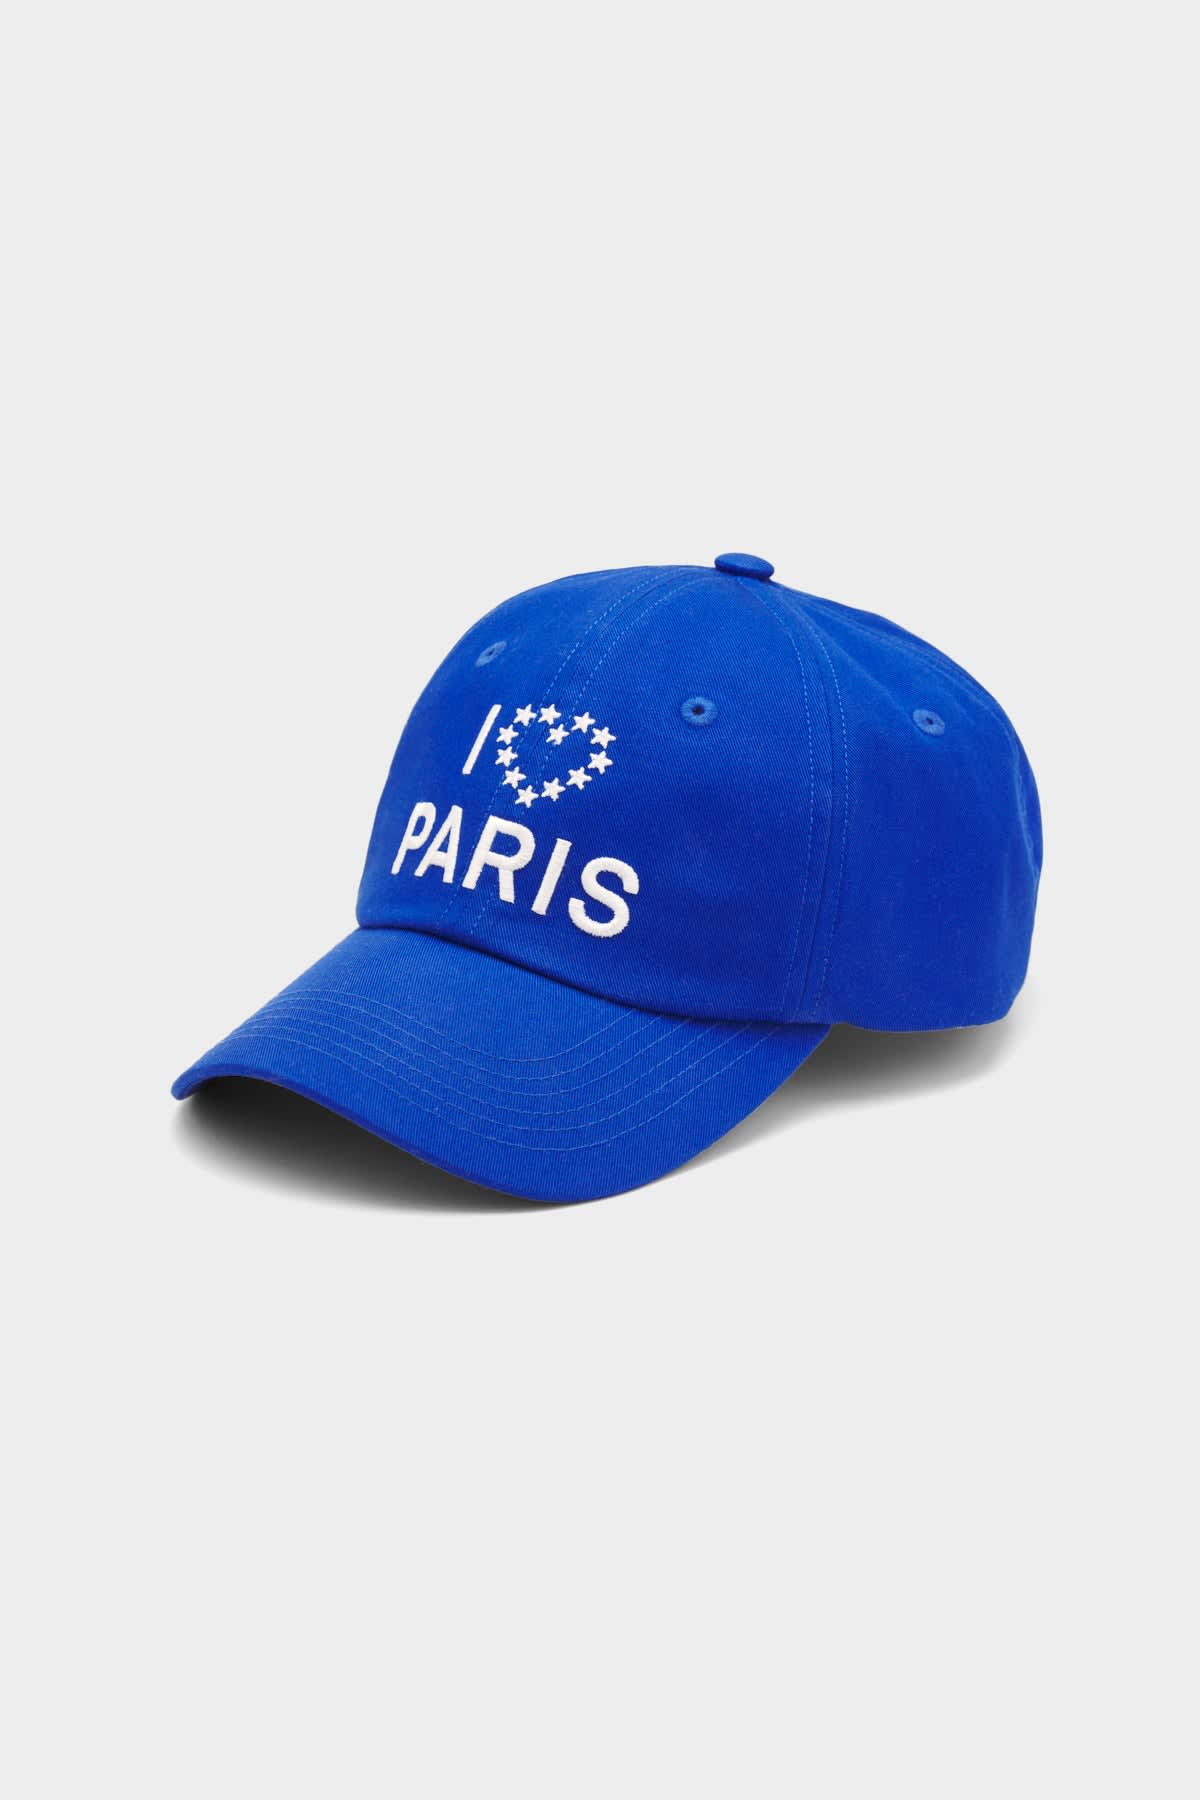 ÉTUDES BOOSTER I LOVE PARIS BLUE HATS 1